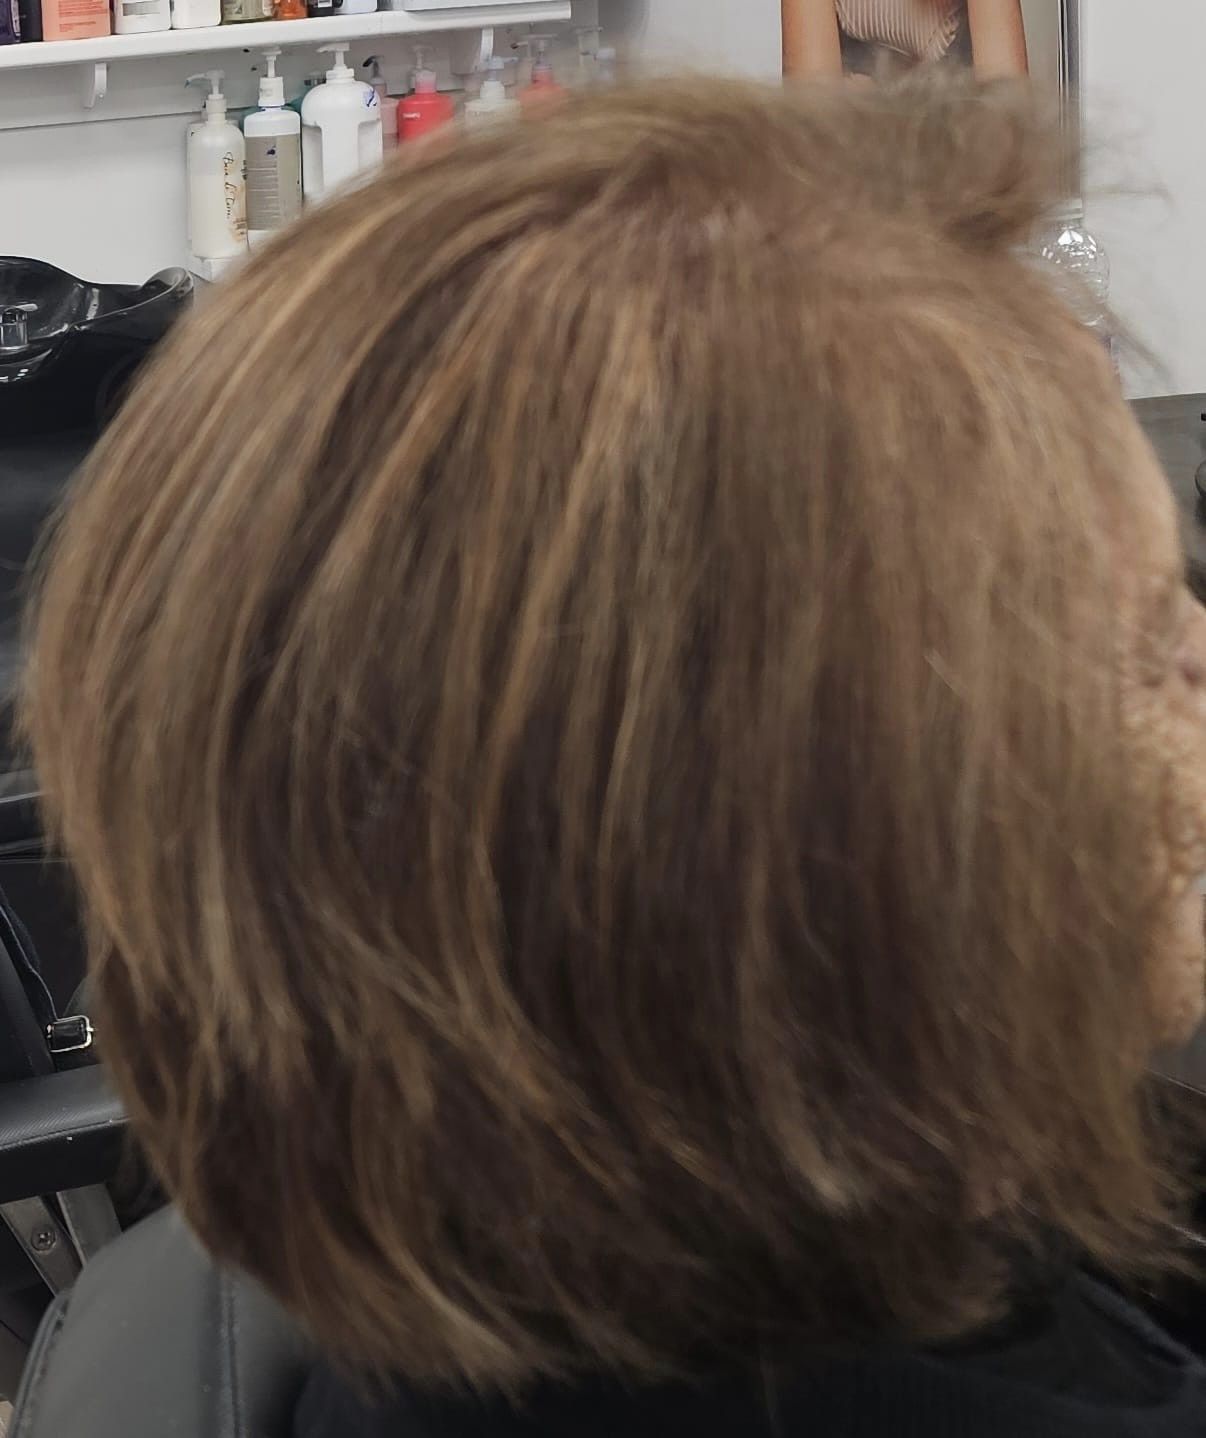 Salon Mil Coupes coiffure hommes et femmes avec rendez-vous 4780 Rue Saint-Félix local 116 porte C, Saint-Augustin-de-Desmaures Quebec G3A 2J9